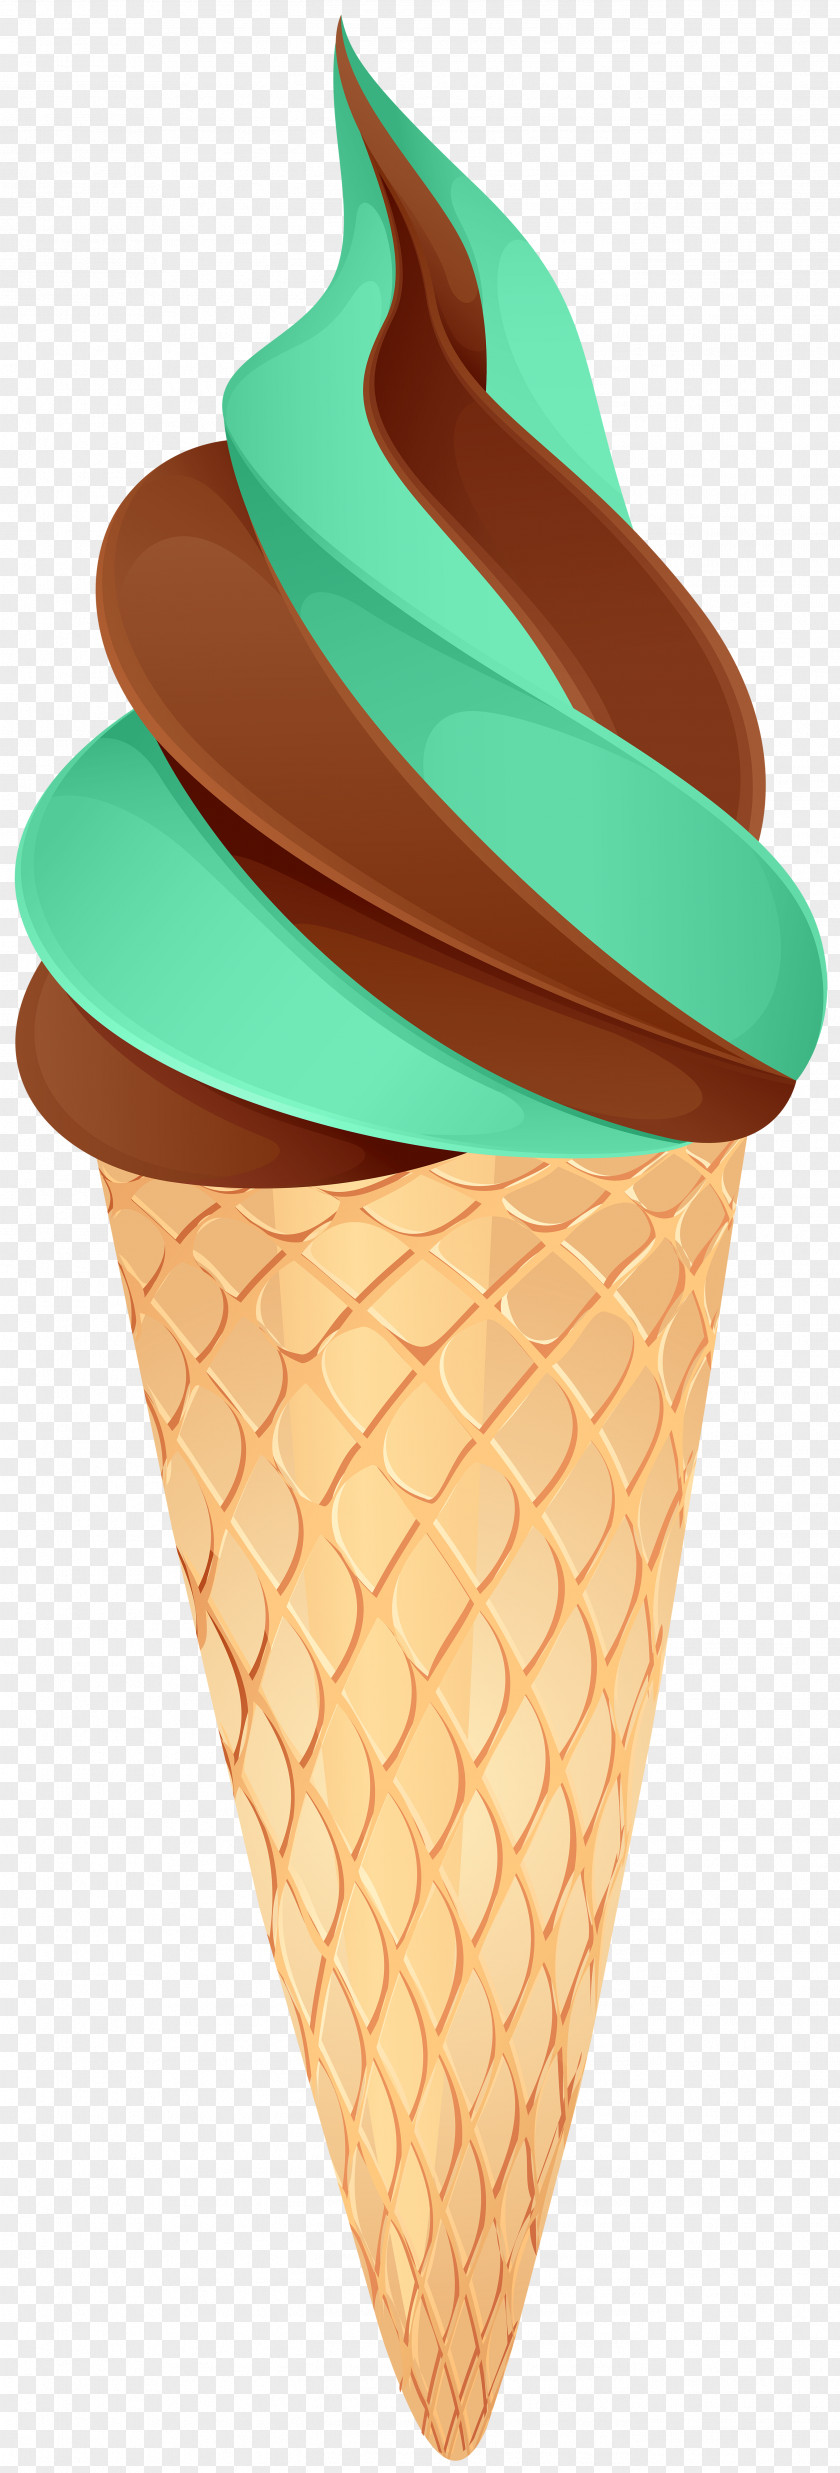 Ice Cream Chocolate Cones Image Clip Art PNG